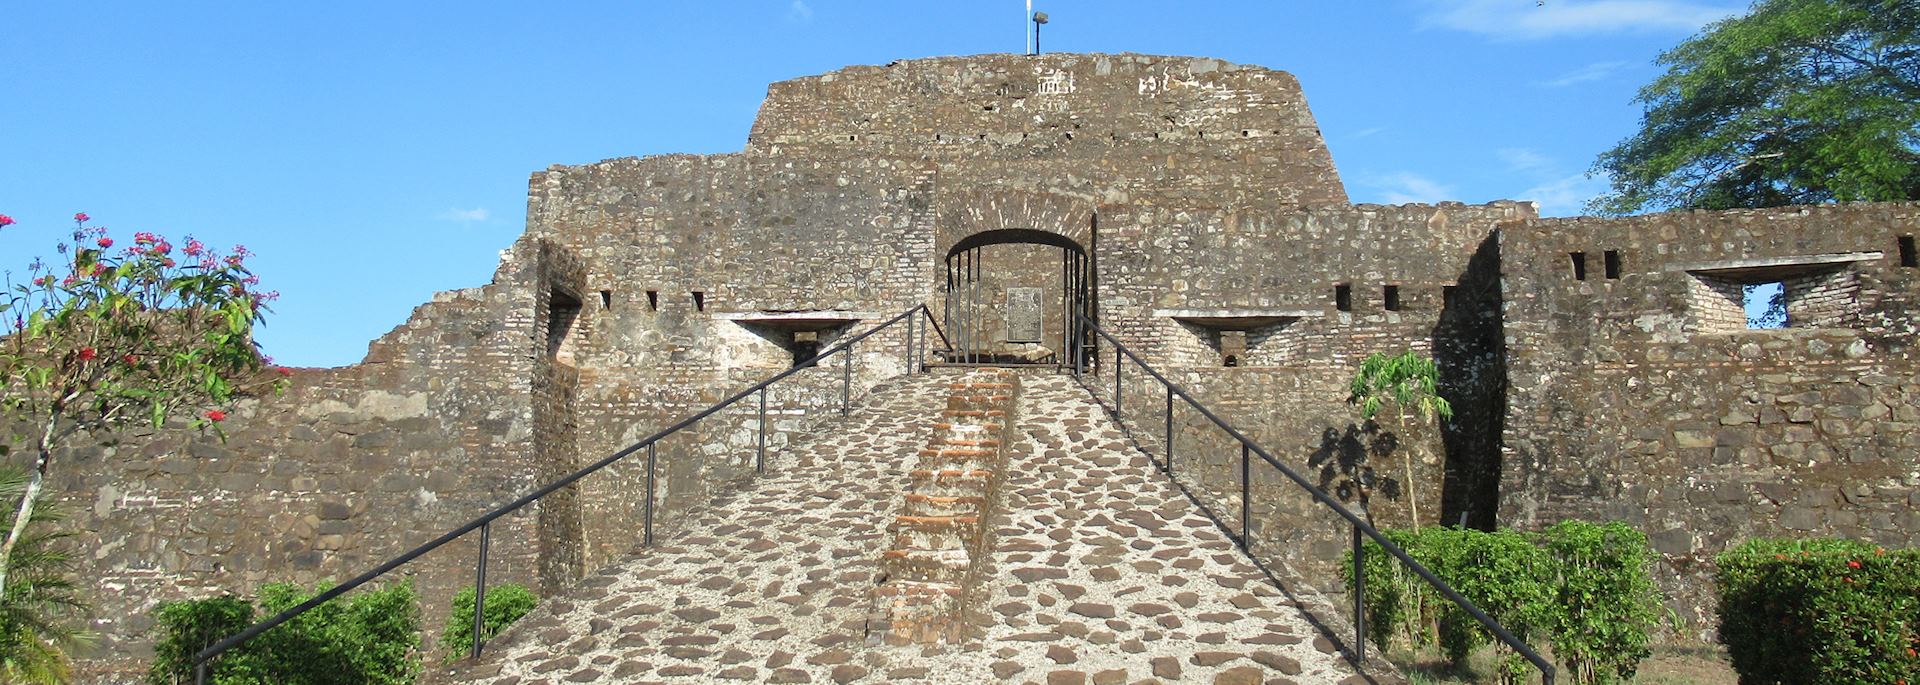 Fortress in El Castillo